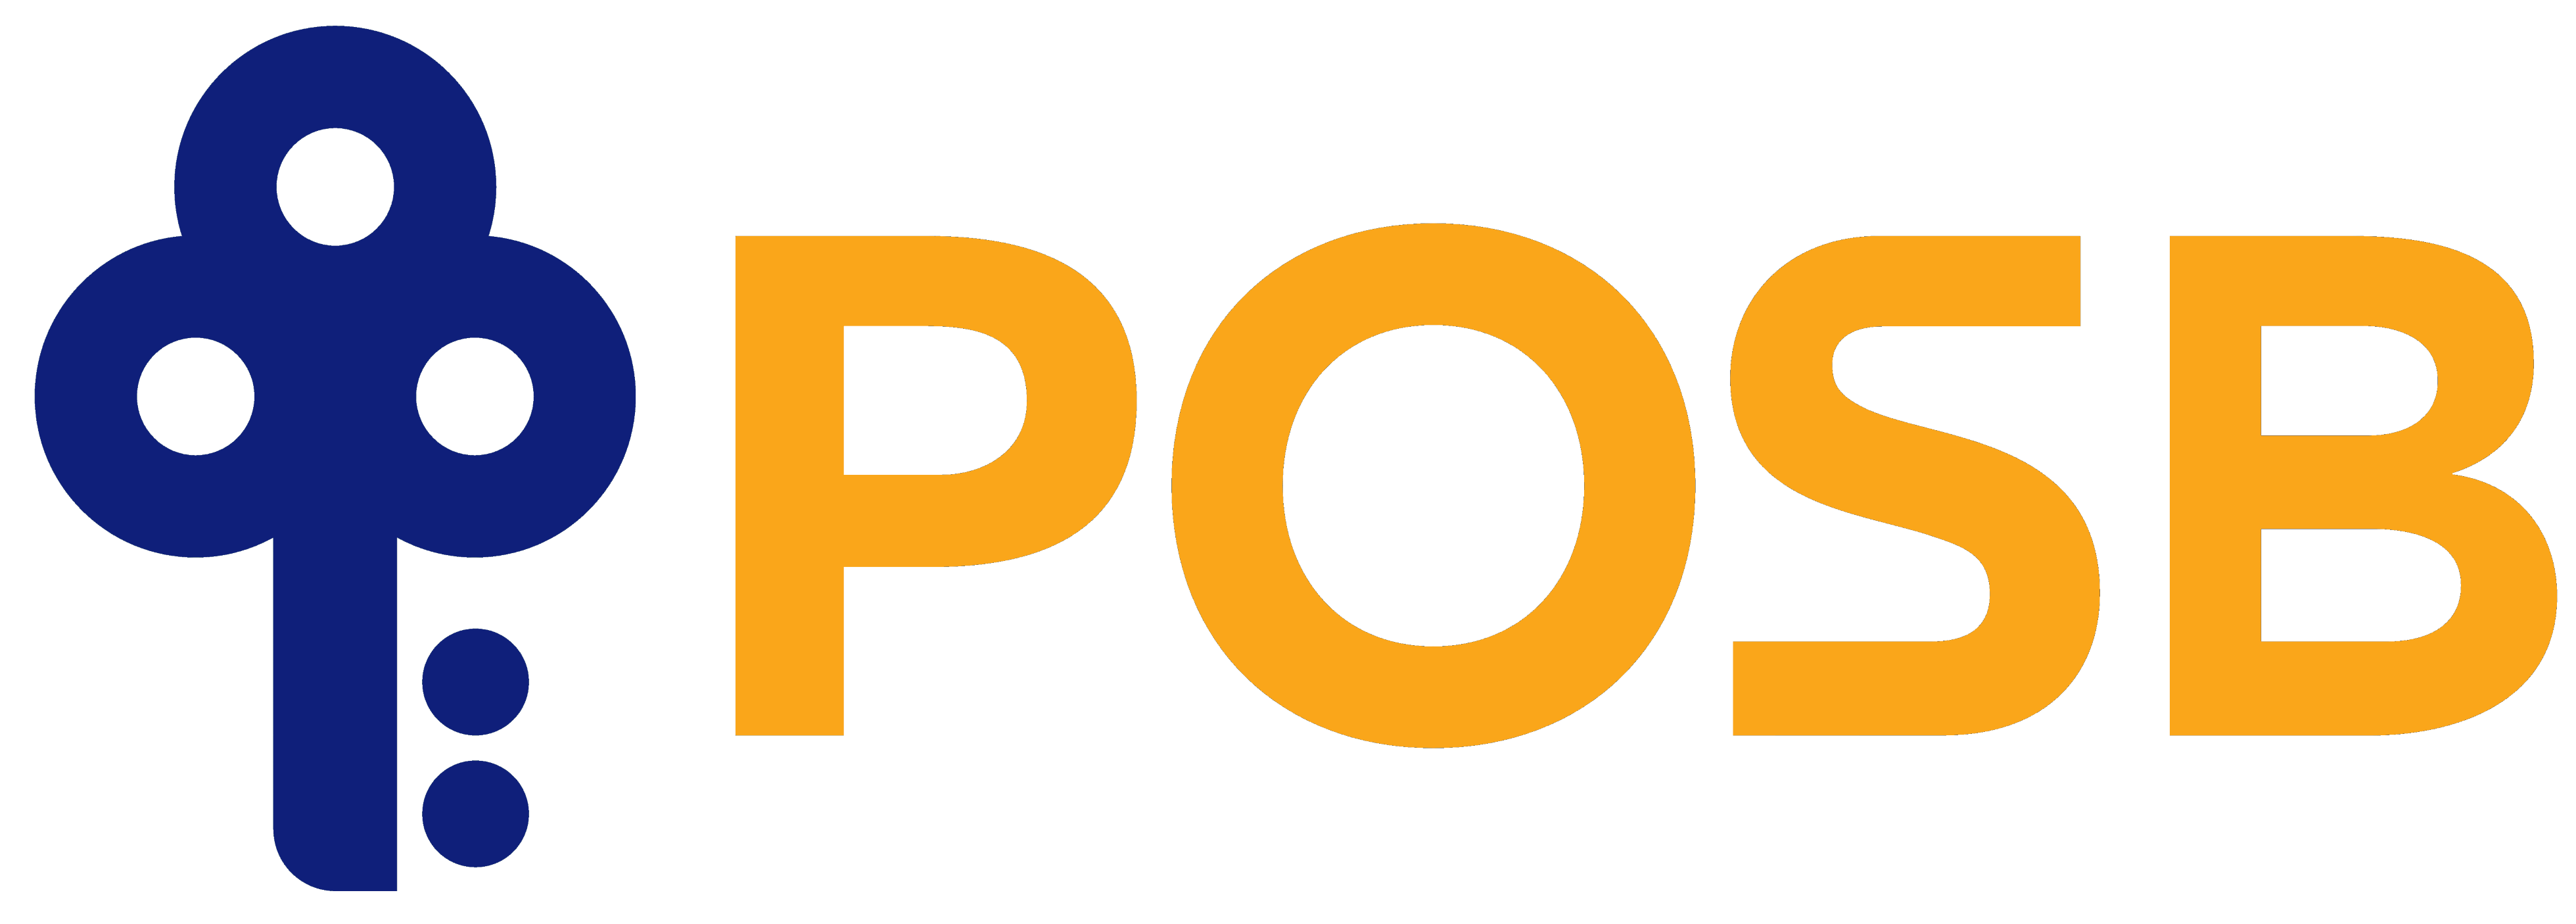 POSB Bank logo, logotype